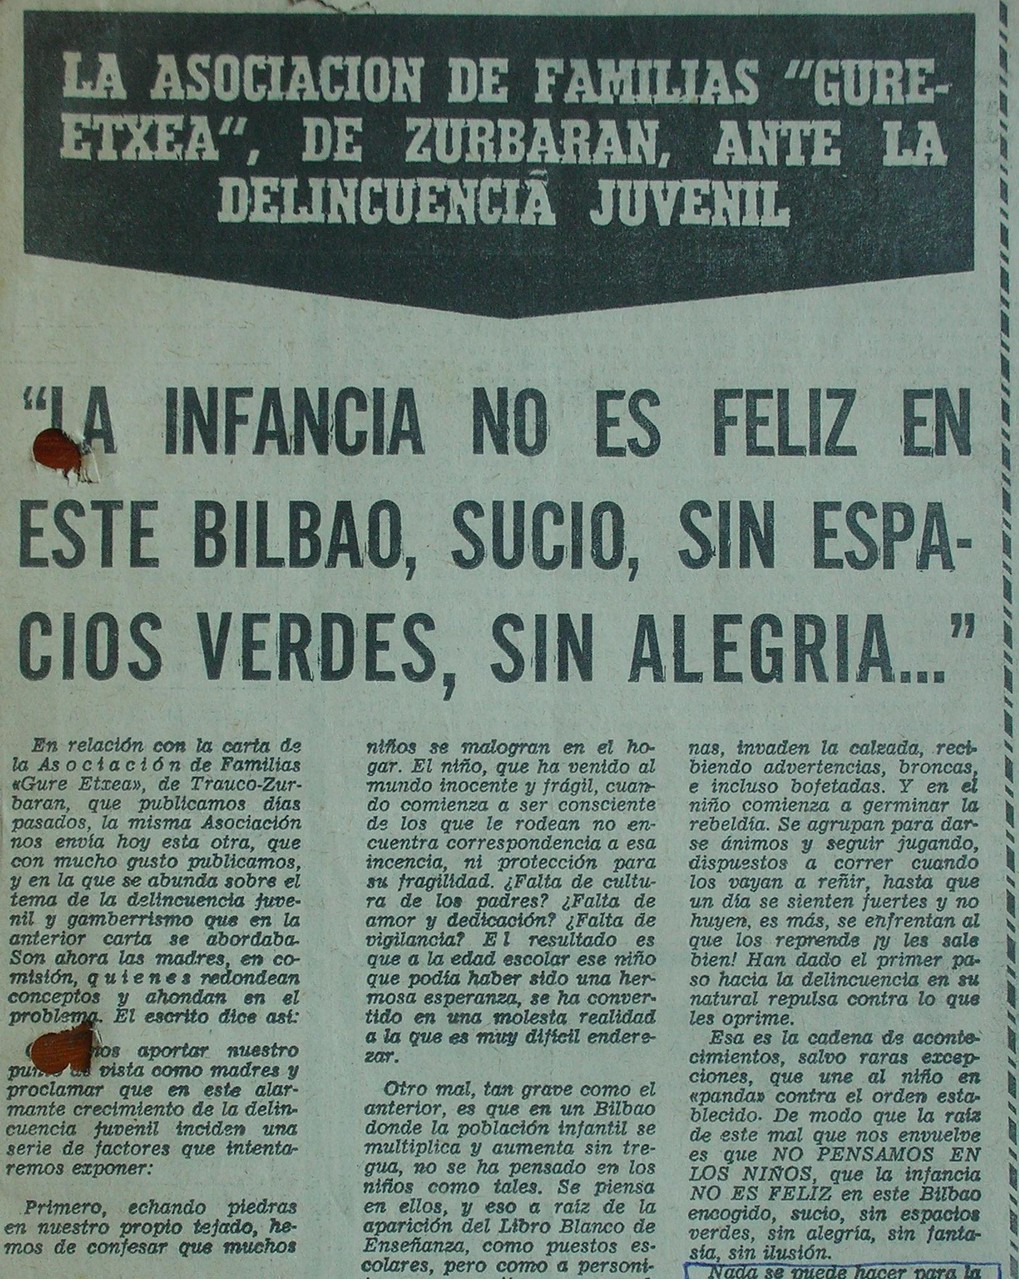 Fotos del Archivo Privado de Gure Etxea, La infancia no es feliz en este Bilbao sucio